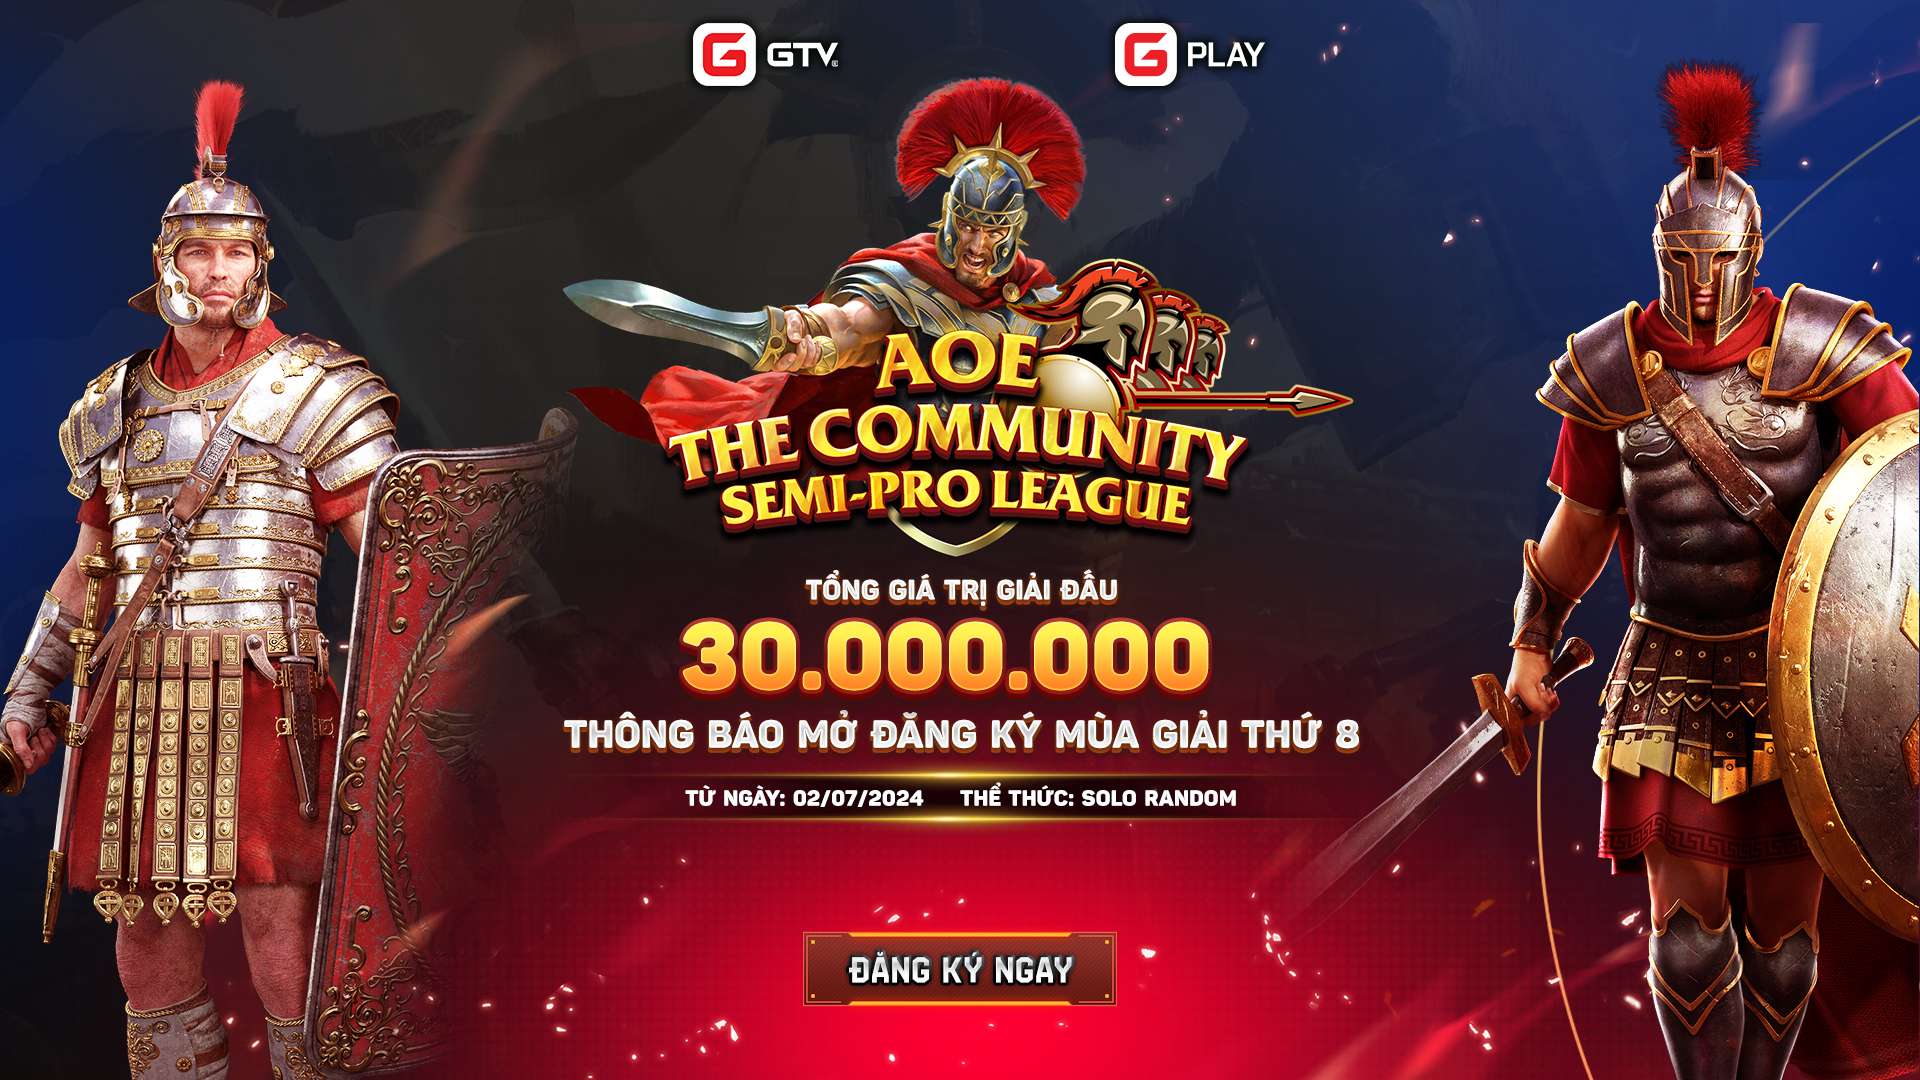 Mở đăng ký AoE The Community Semi-Pro League 8 - Sân chơi cho những game thủ bán chuyên